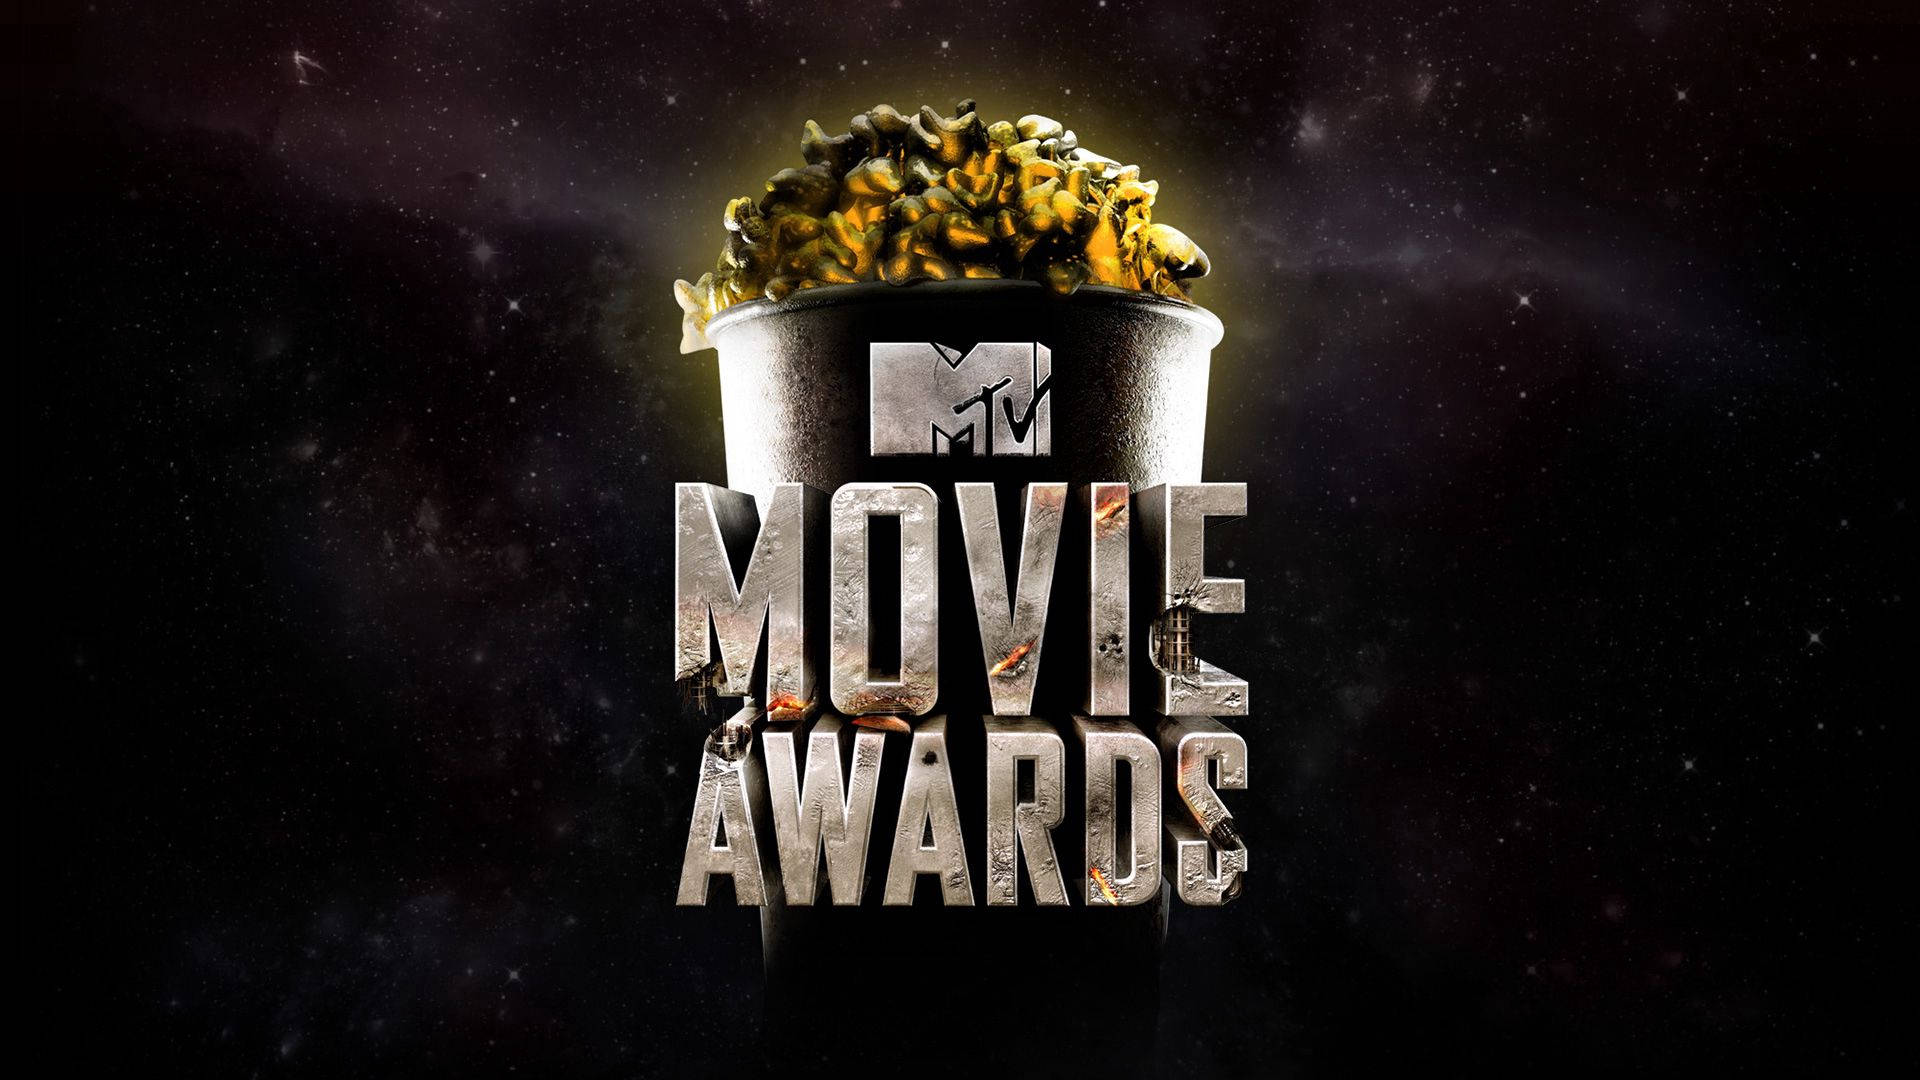 Mtv Movie Awards Background